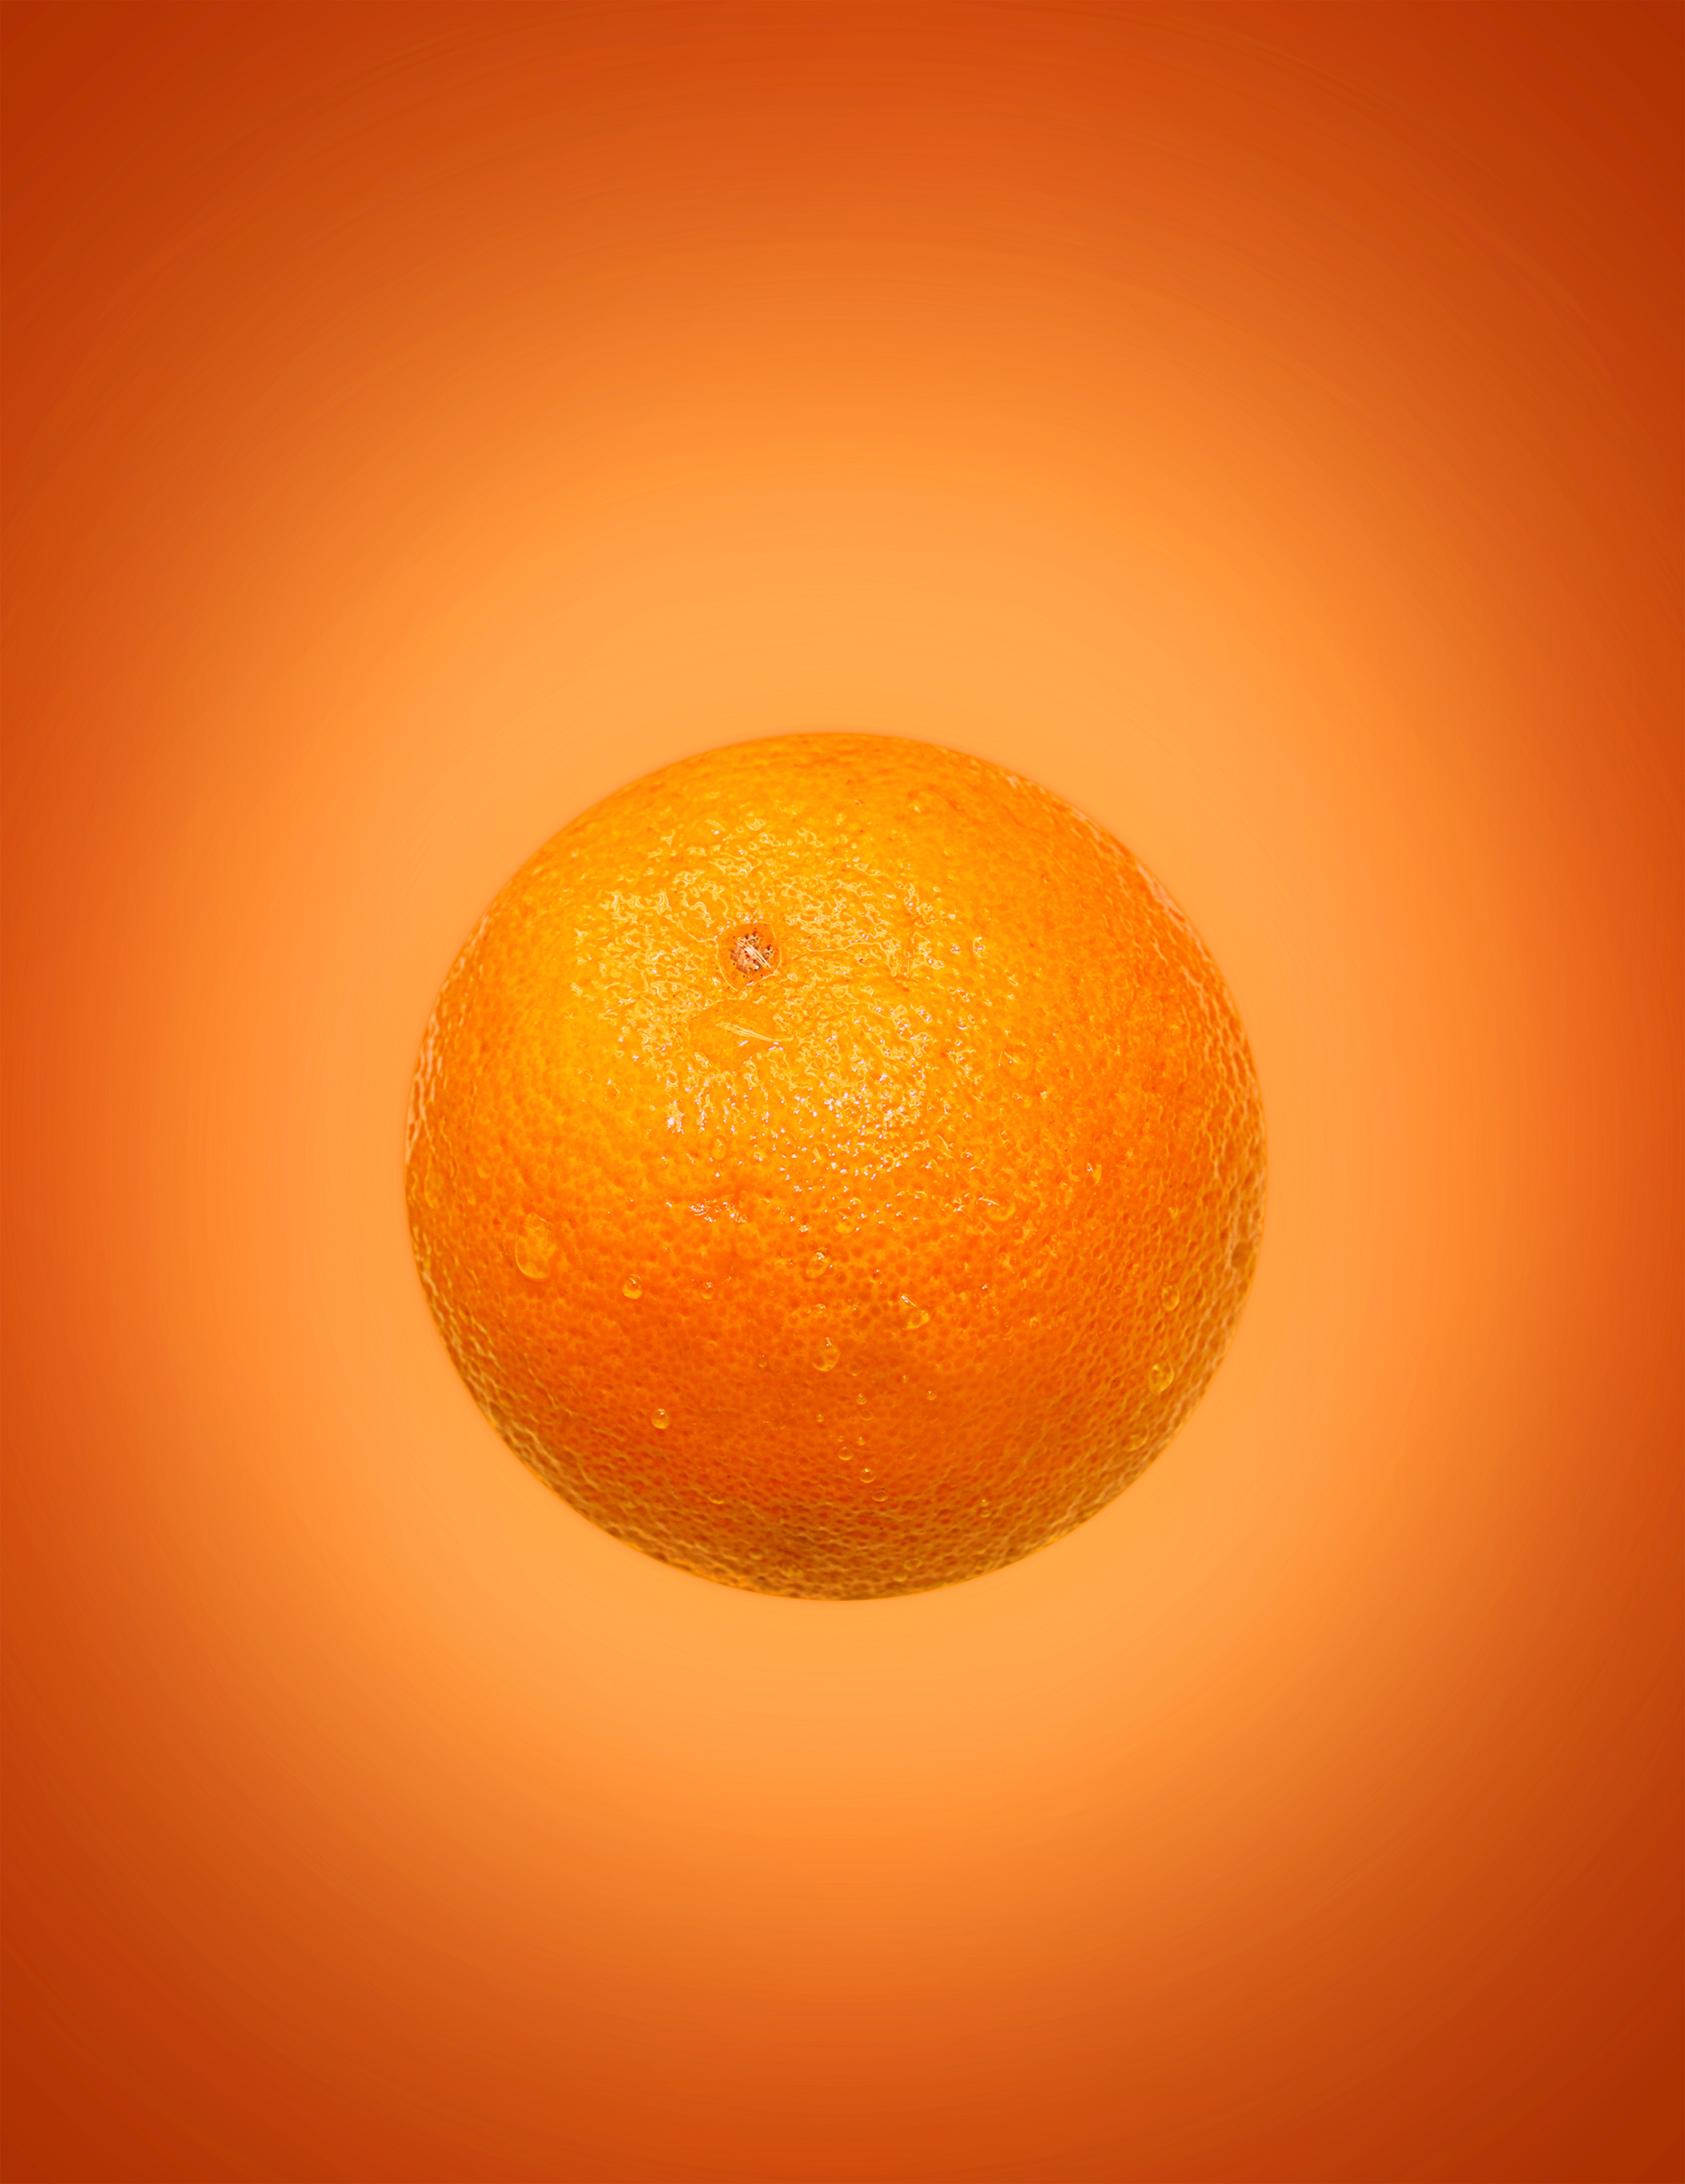 Orange (fruit) on orange (background) photo